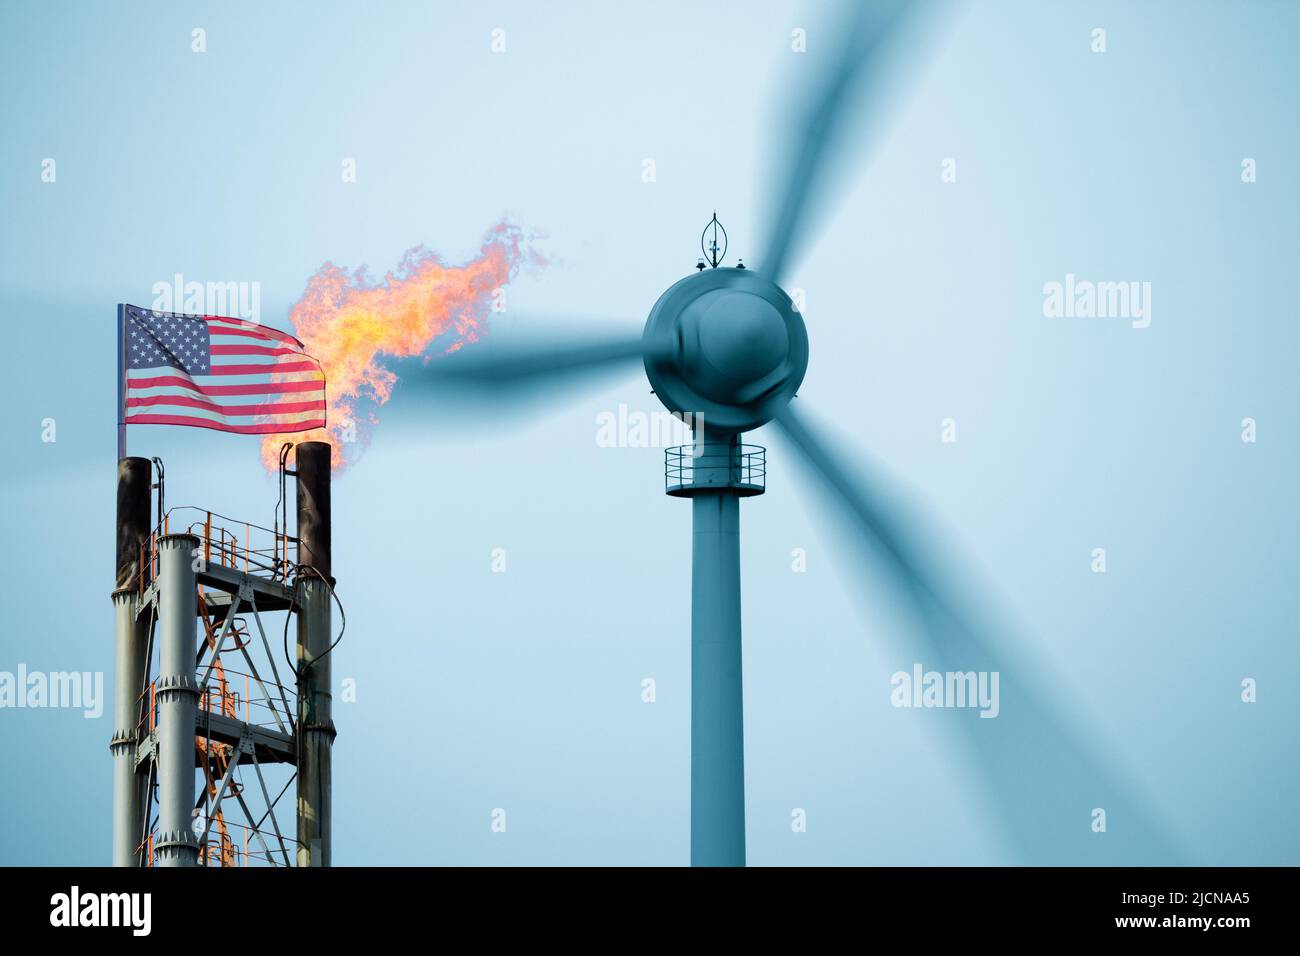 USA saubere, erneuerbare Energien, fossile Brennstoffe, Gas, Ölindustrie, Windturbinen, Inflation, Wirtschaft, Netto-Null-Emissionen, globale Erwärmung, Klimawandel... Stockfoto